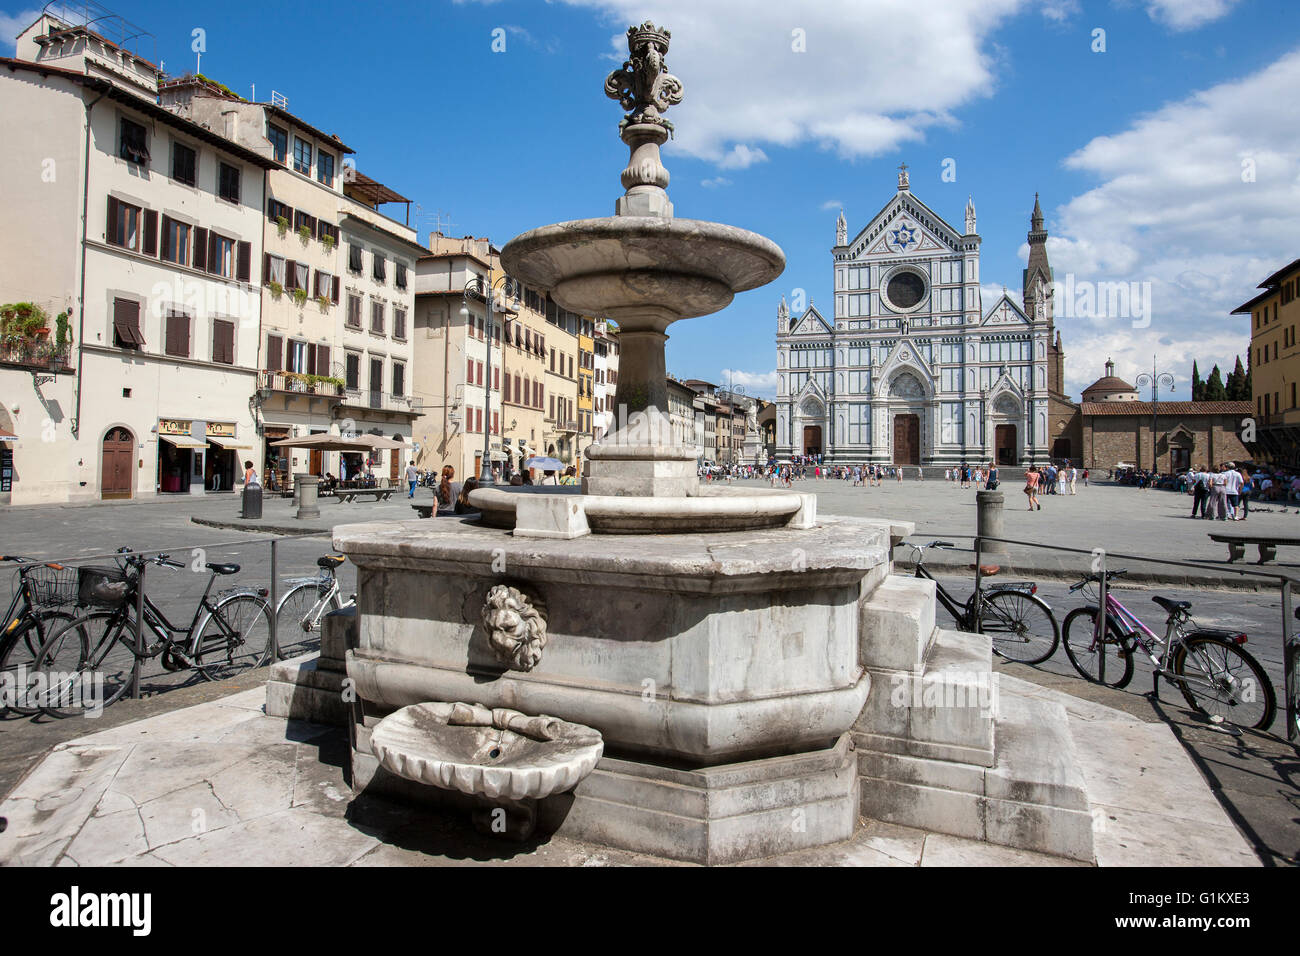 Fontana di piazza Santa Croce a Firenze,Piazza di Piazza Santa Croce Chiesa  della Basilica di Santa Croce, fontana da G Manetti Foto stock - Alamy